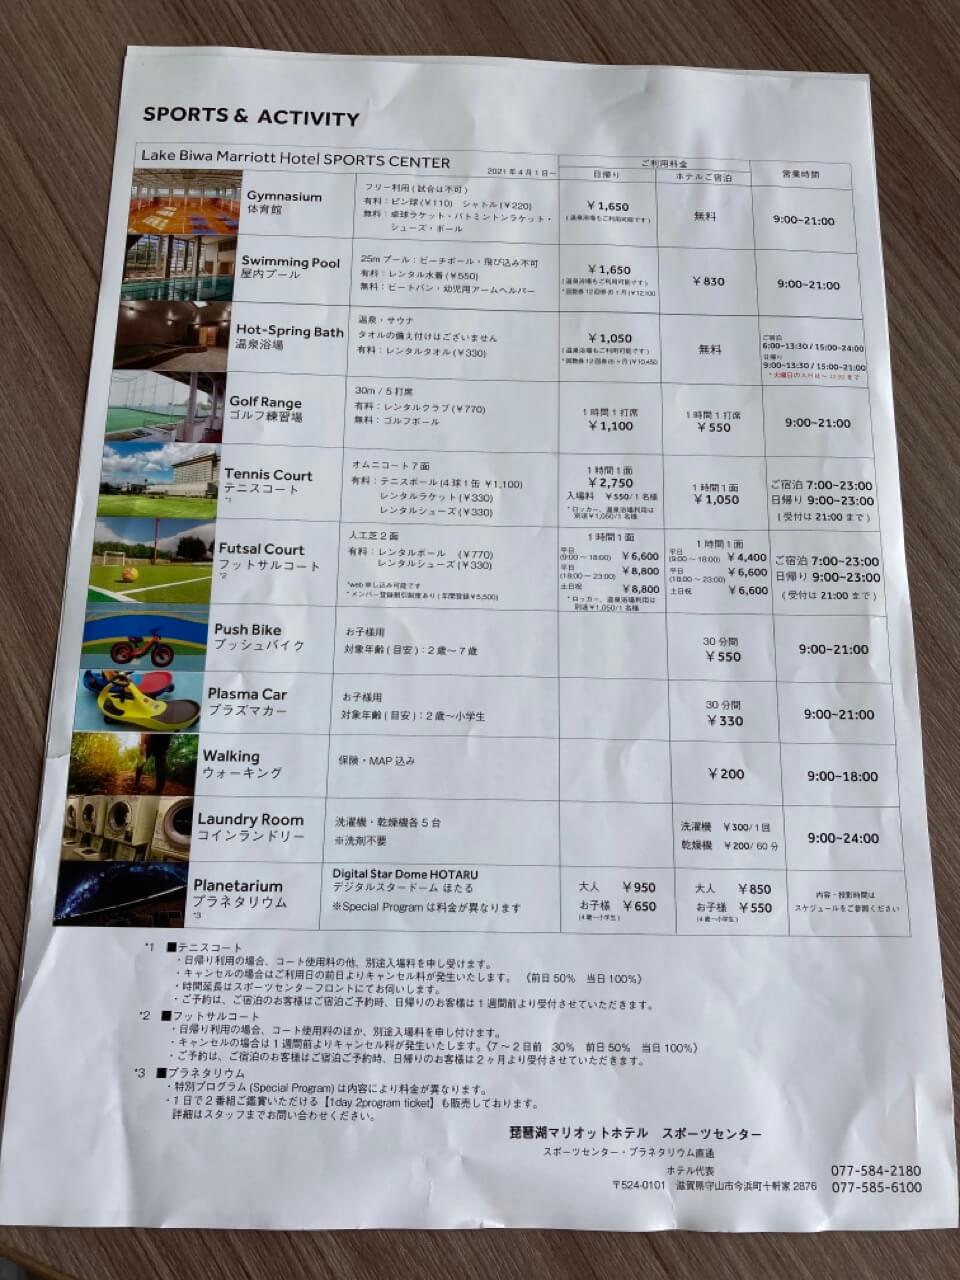 琵琶湖マリオットホテルでできるアクティビティの料金と利用時間の案内用紙の写真